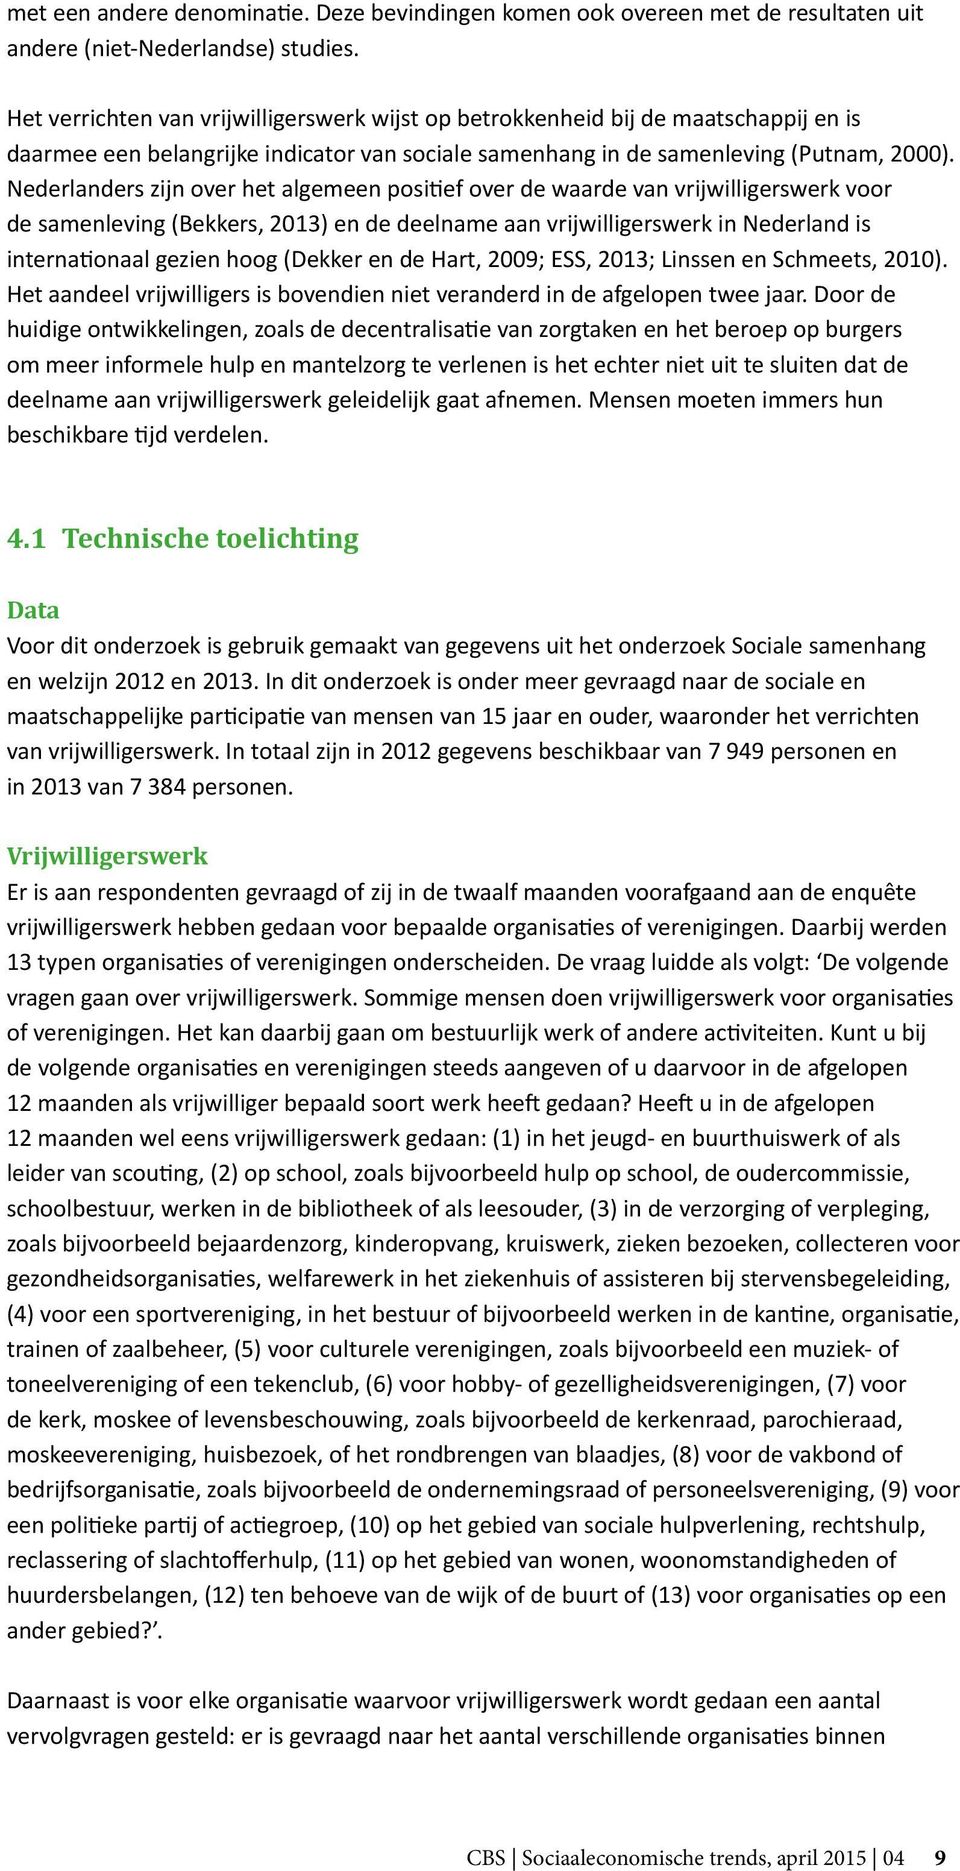 Nederlanders zijn over het algemeen positief over de waarde van vrijwilligerswerk voor de samenleving (Bekkers, 2013) en de deelname aan vrijwilligerswerk in Nederland is internationaal gezien hoog